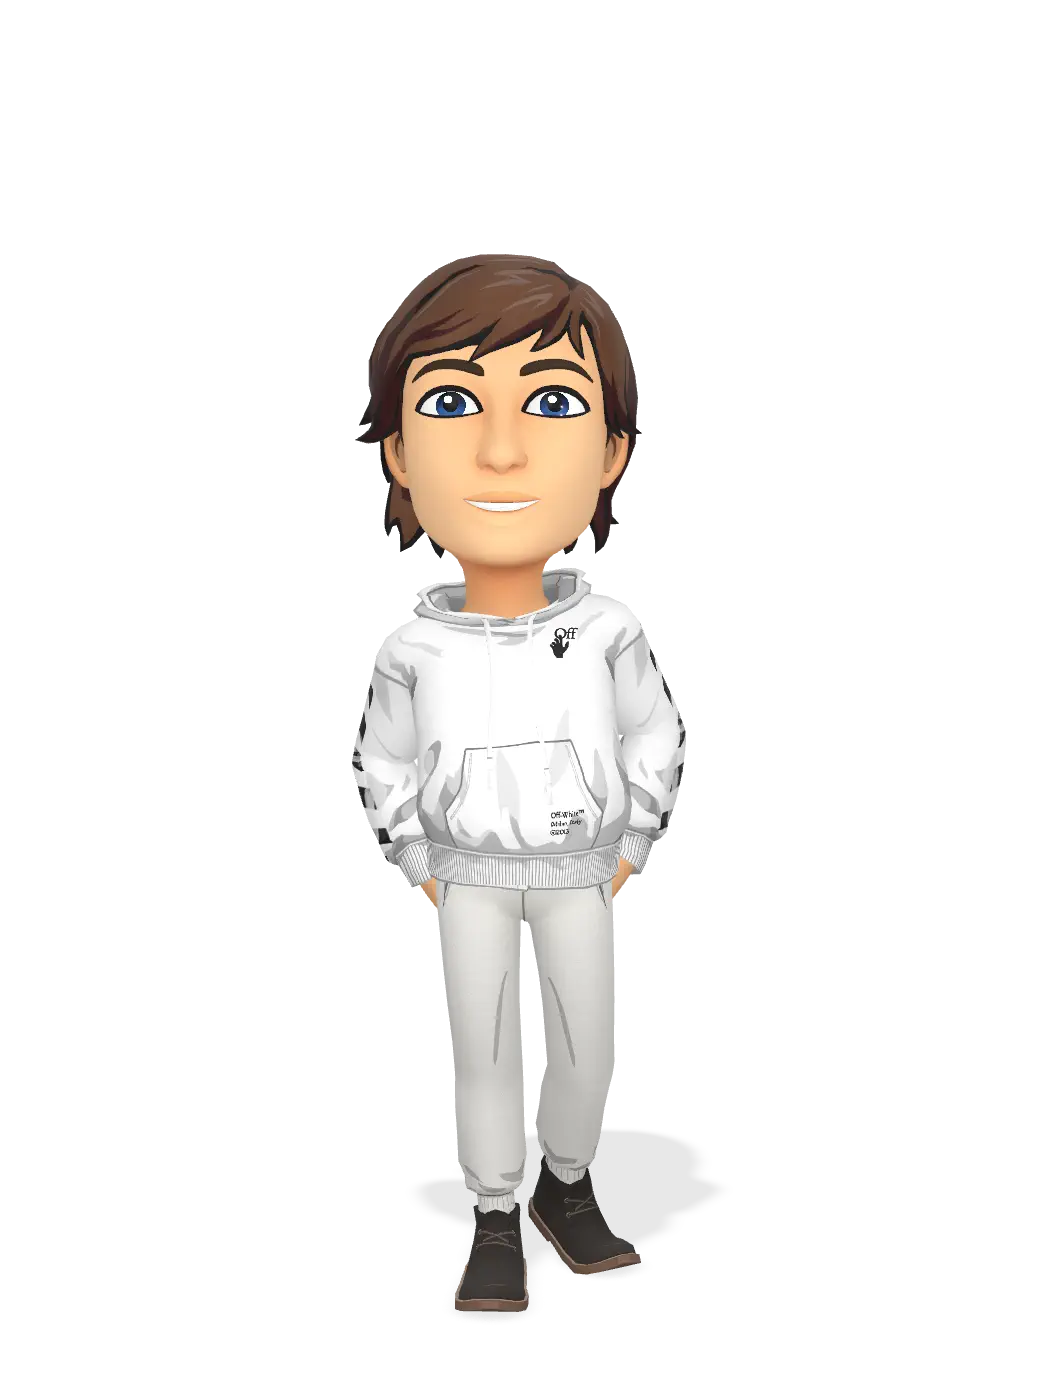 3D Bitmoji for jonahgreen avatar